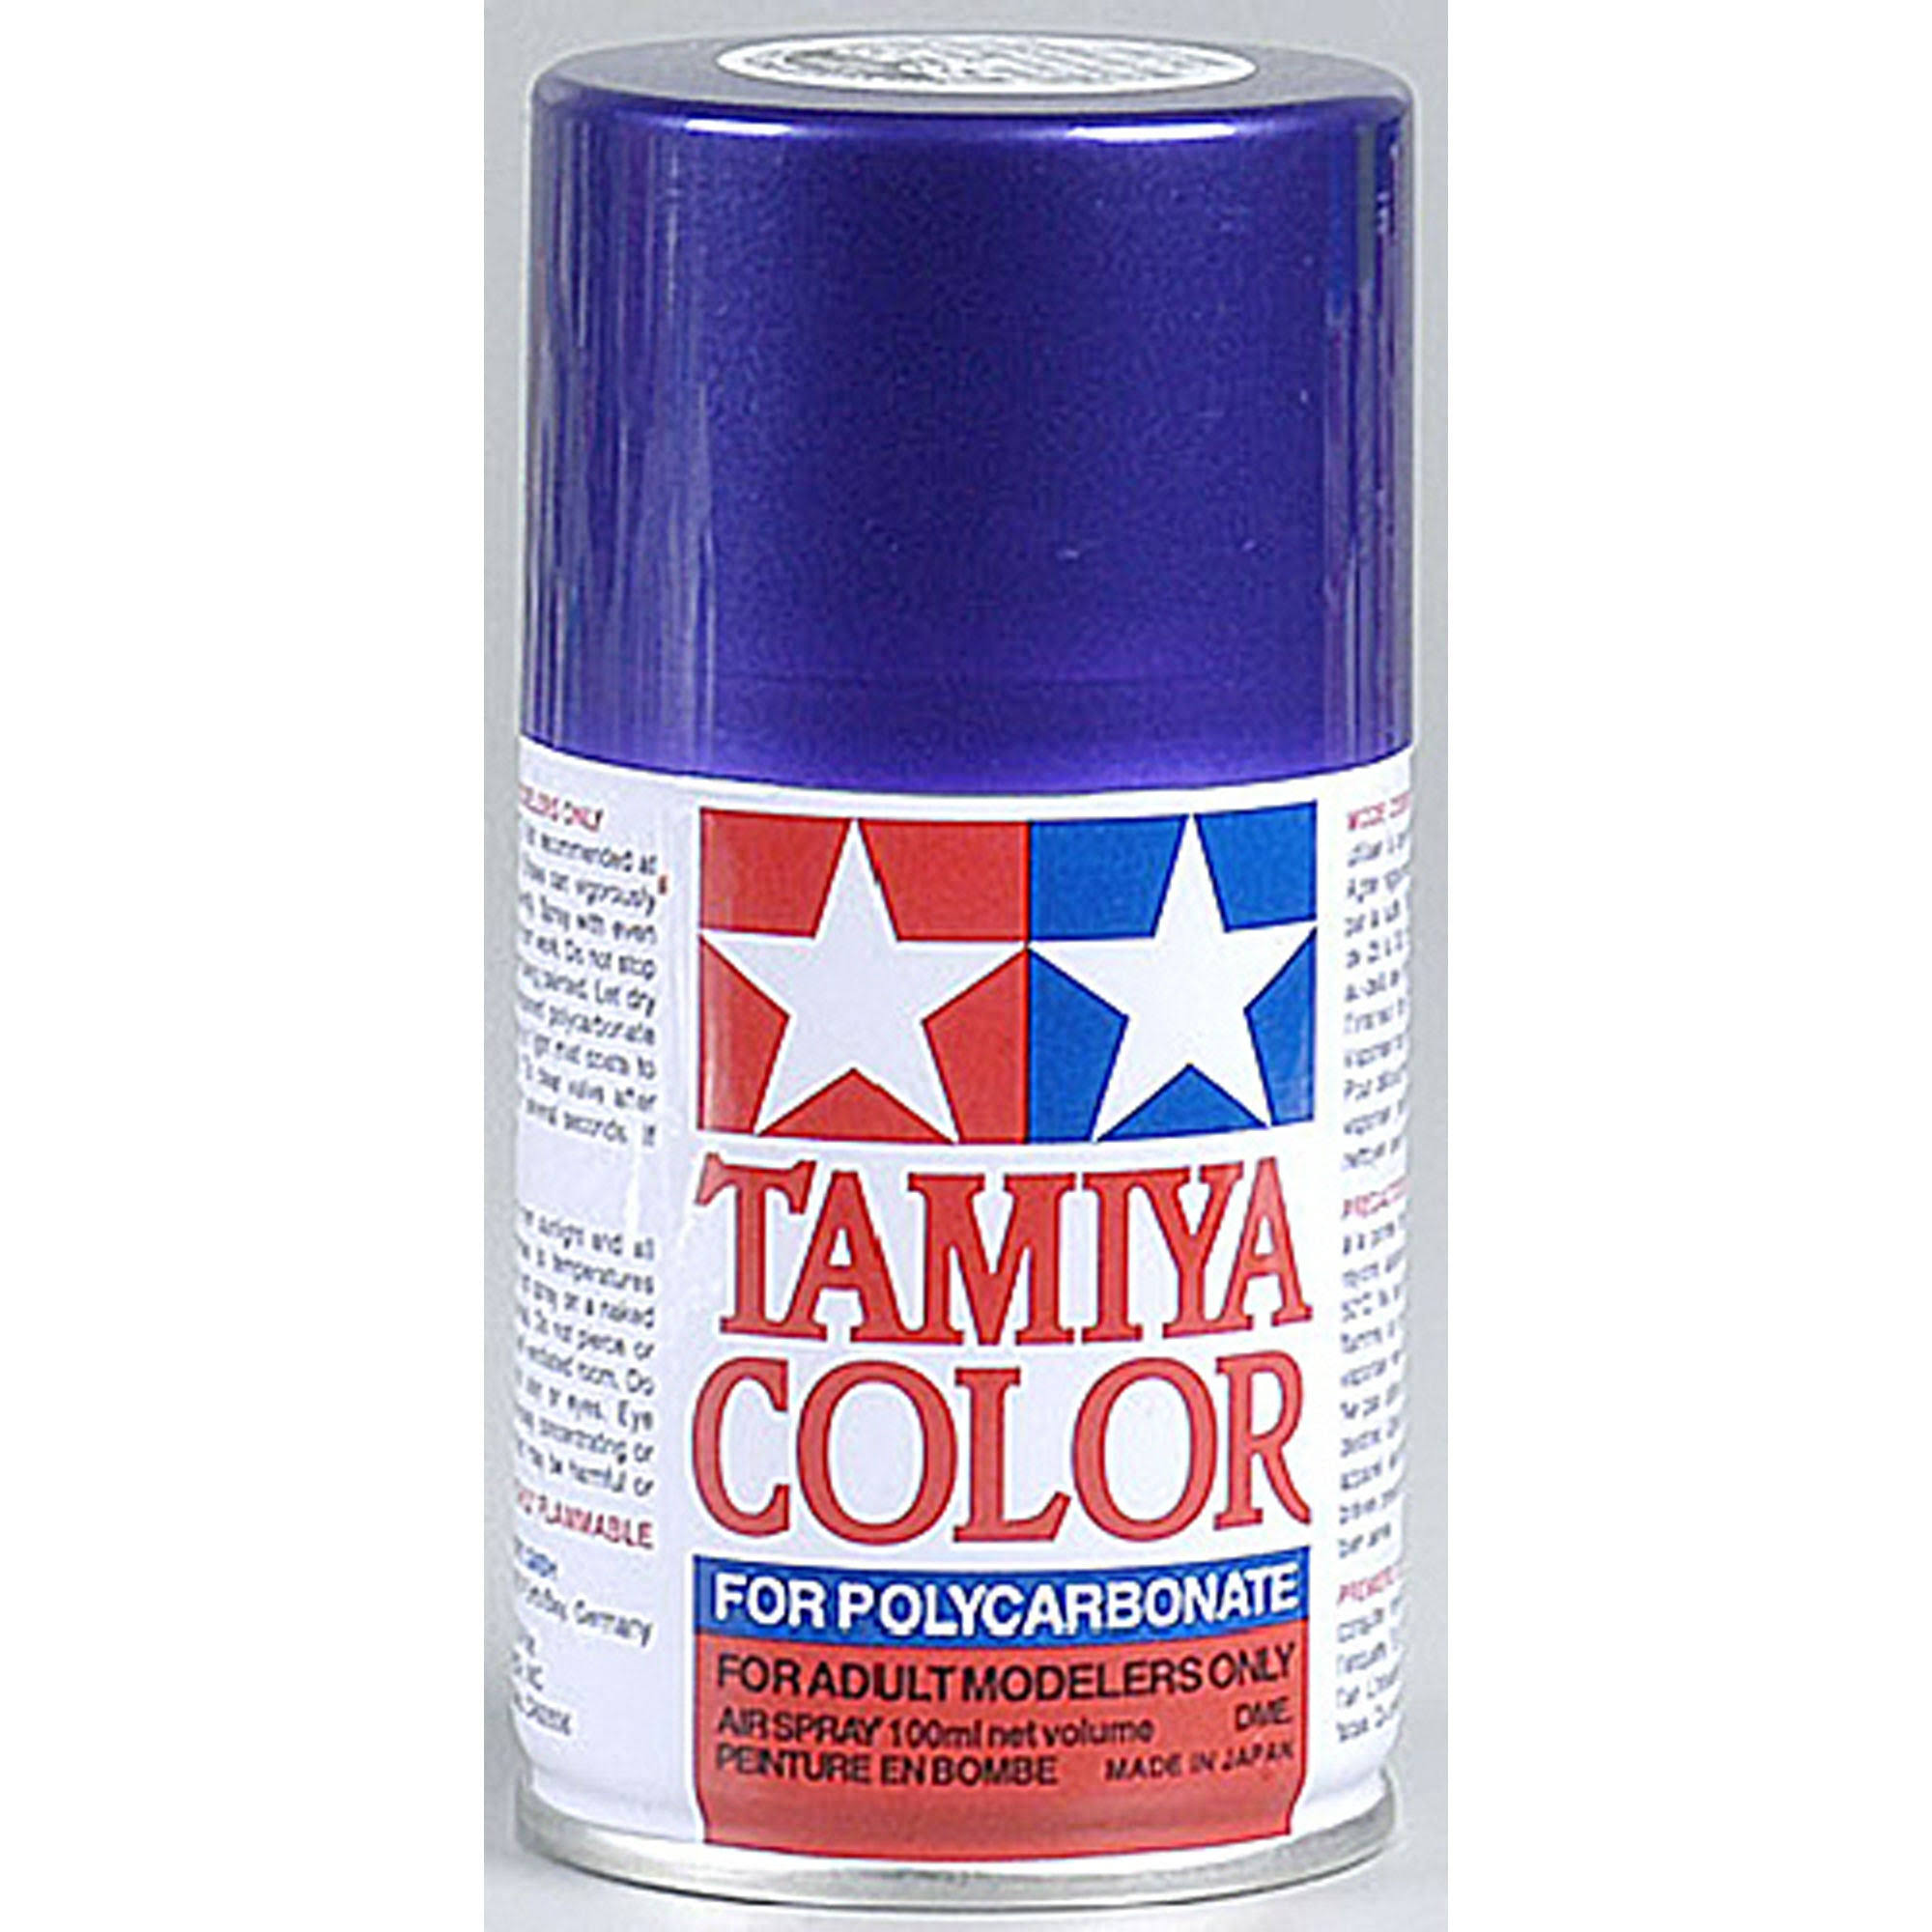 Tamiya Polycarbonate Spray Paint - Metallic Purple, 3oz